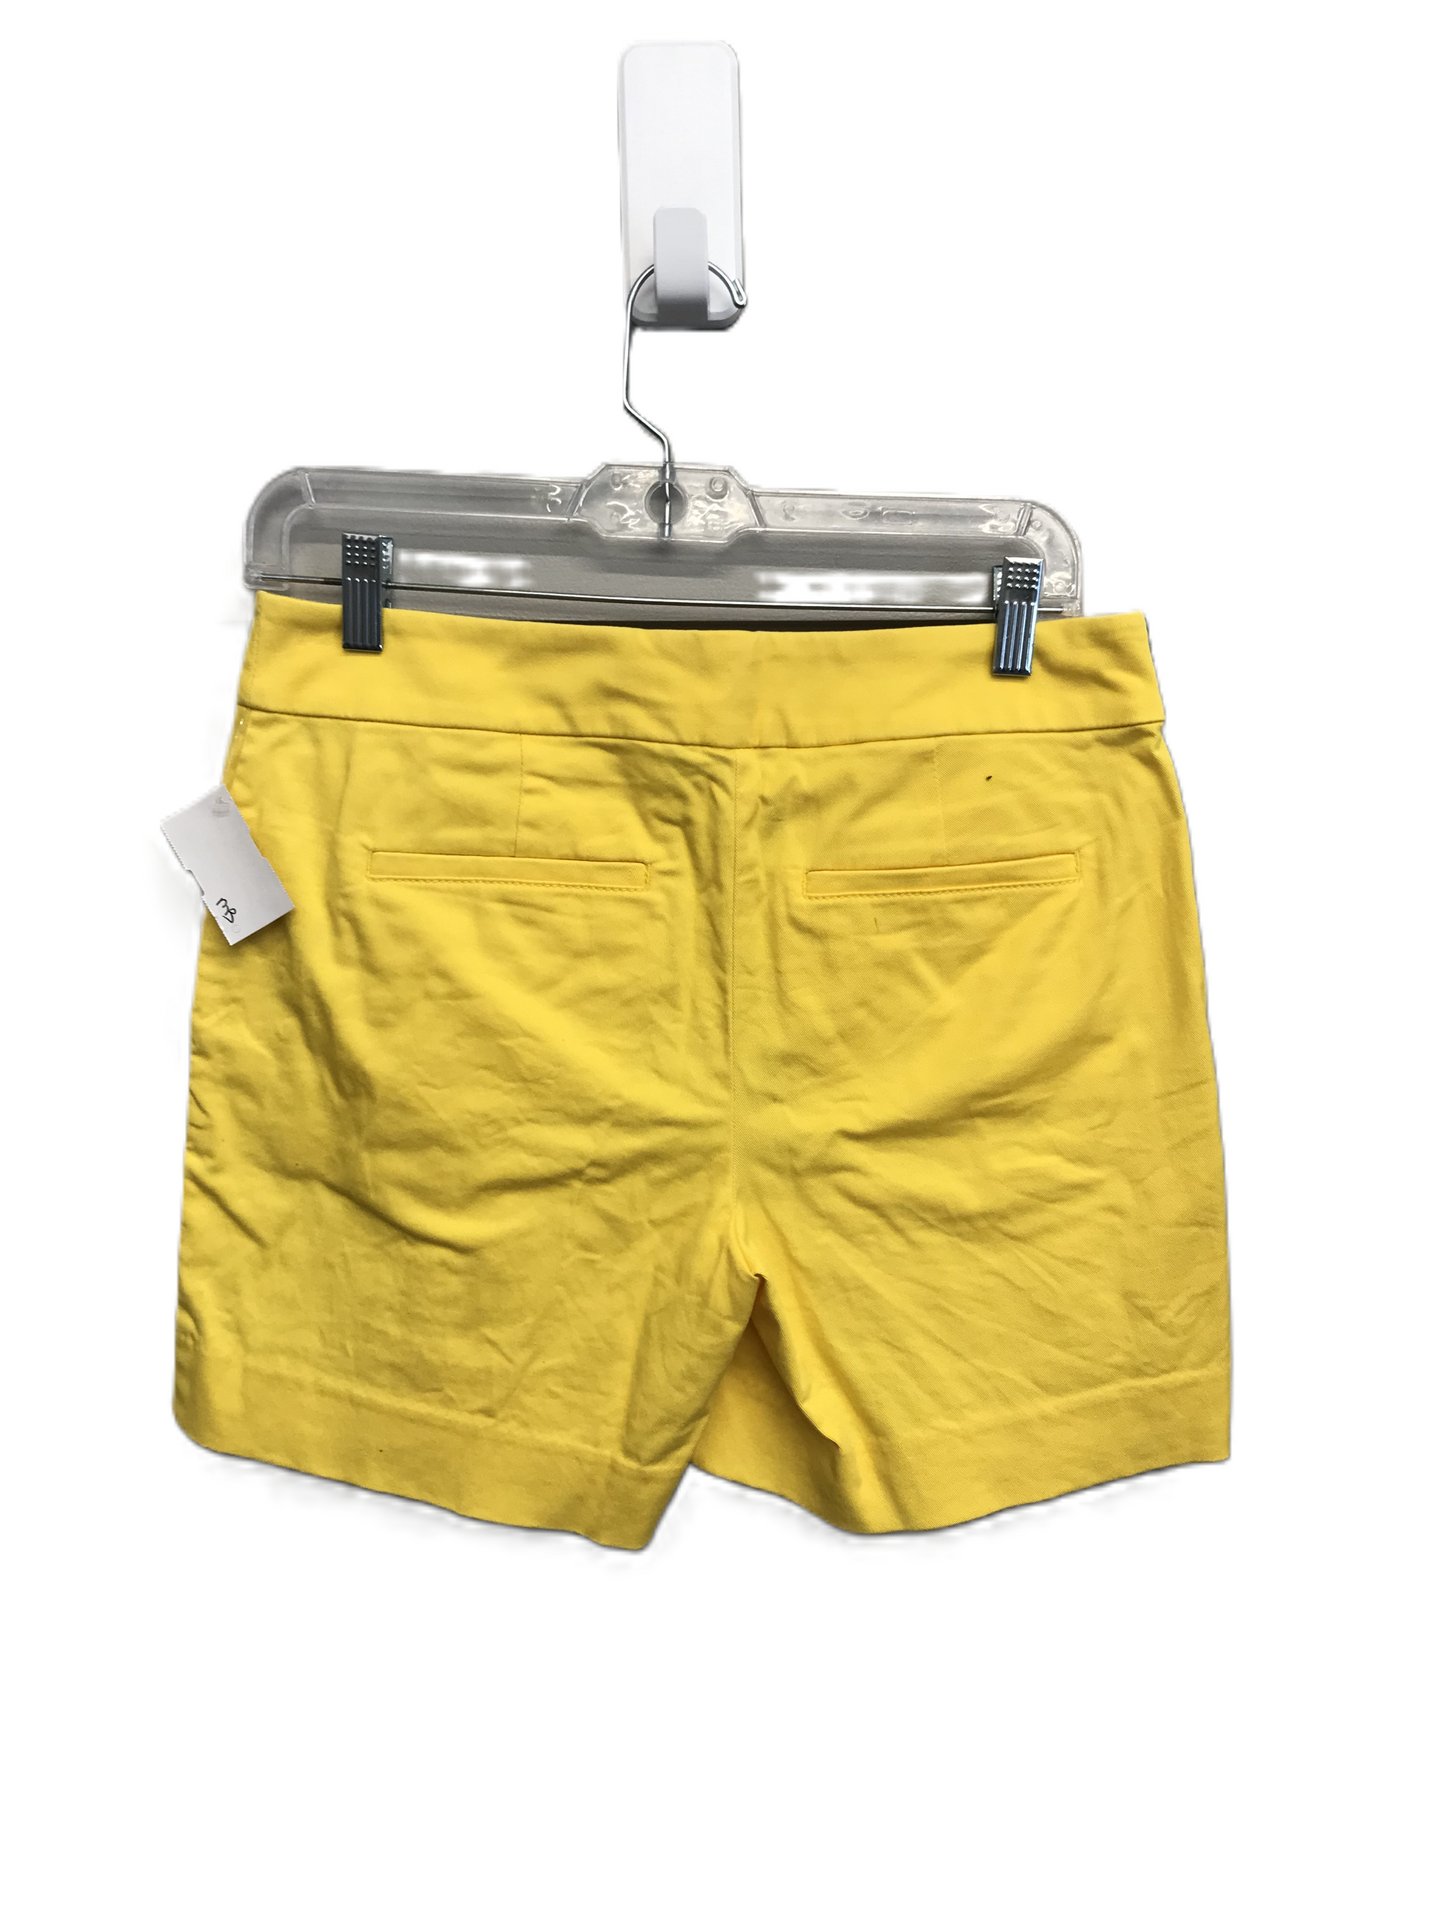 Yellow Shorts By Loft, Size: 0